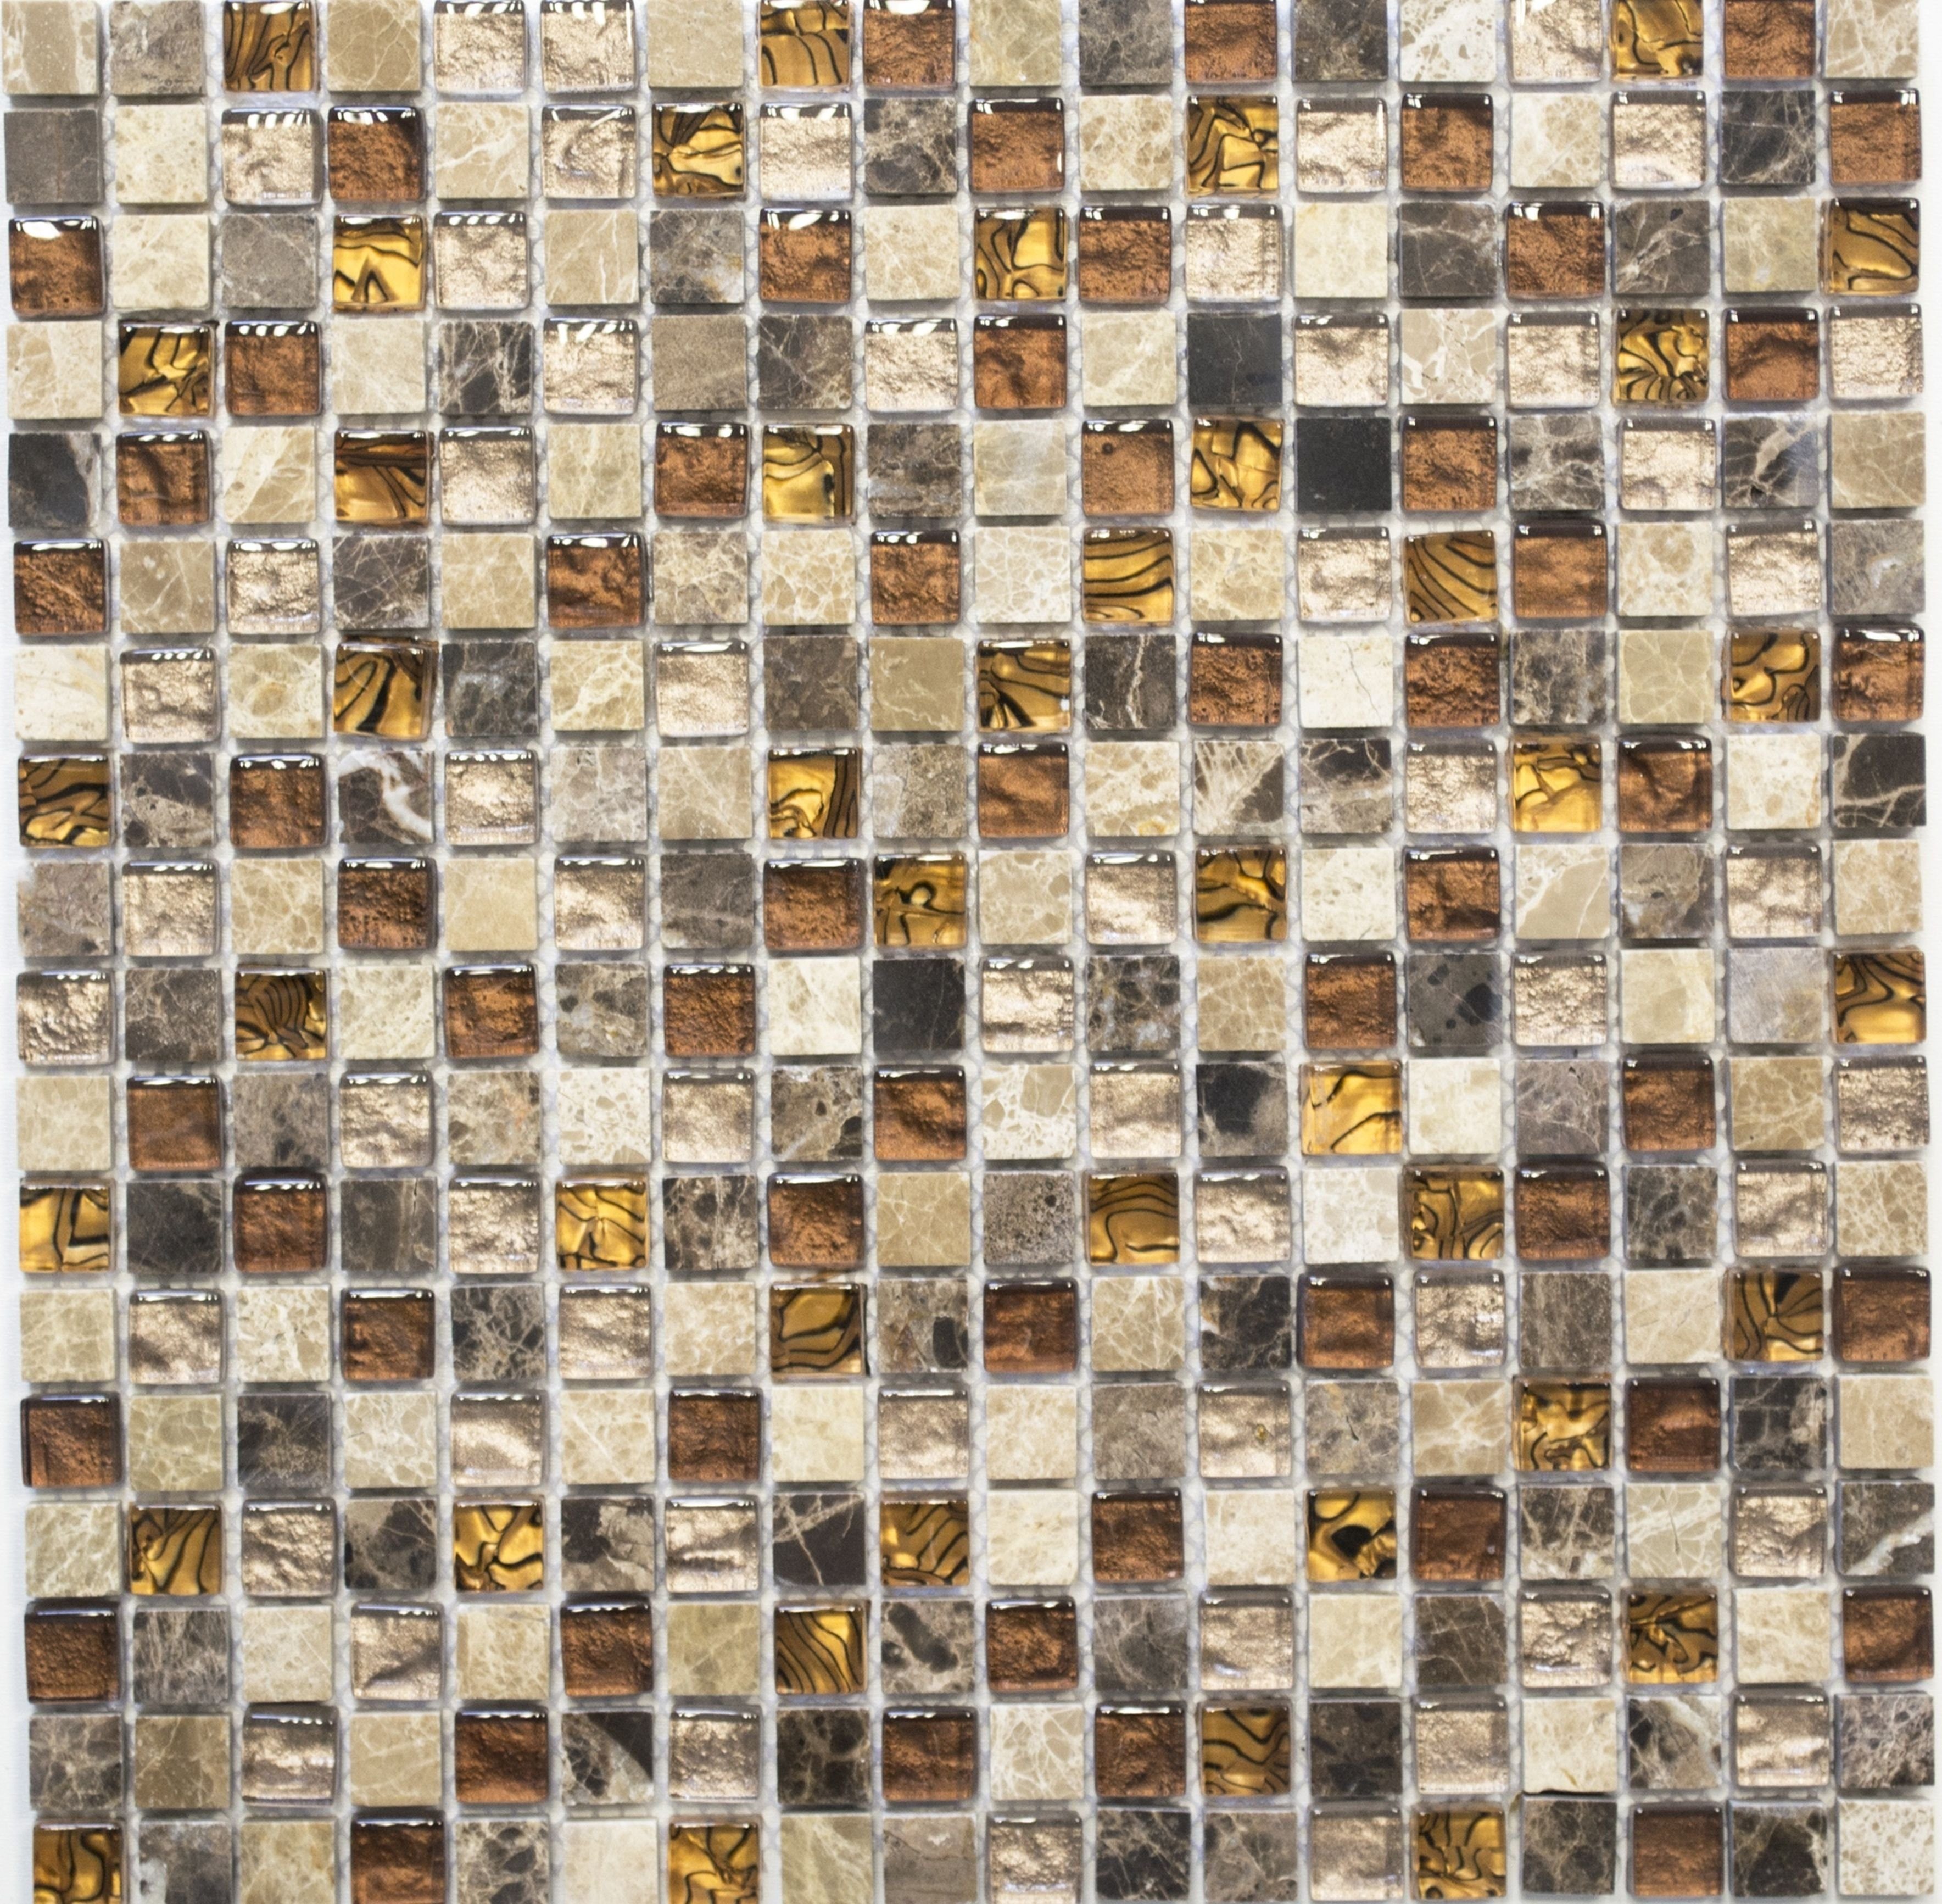 Mosani Mosaikfliesen Glasmosaik Naturstein Mosaikfliese beige braun creme